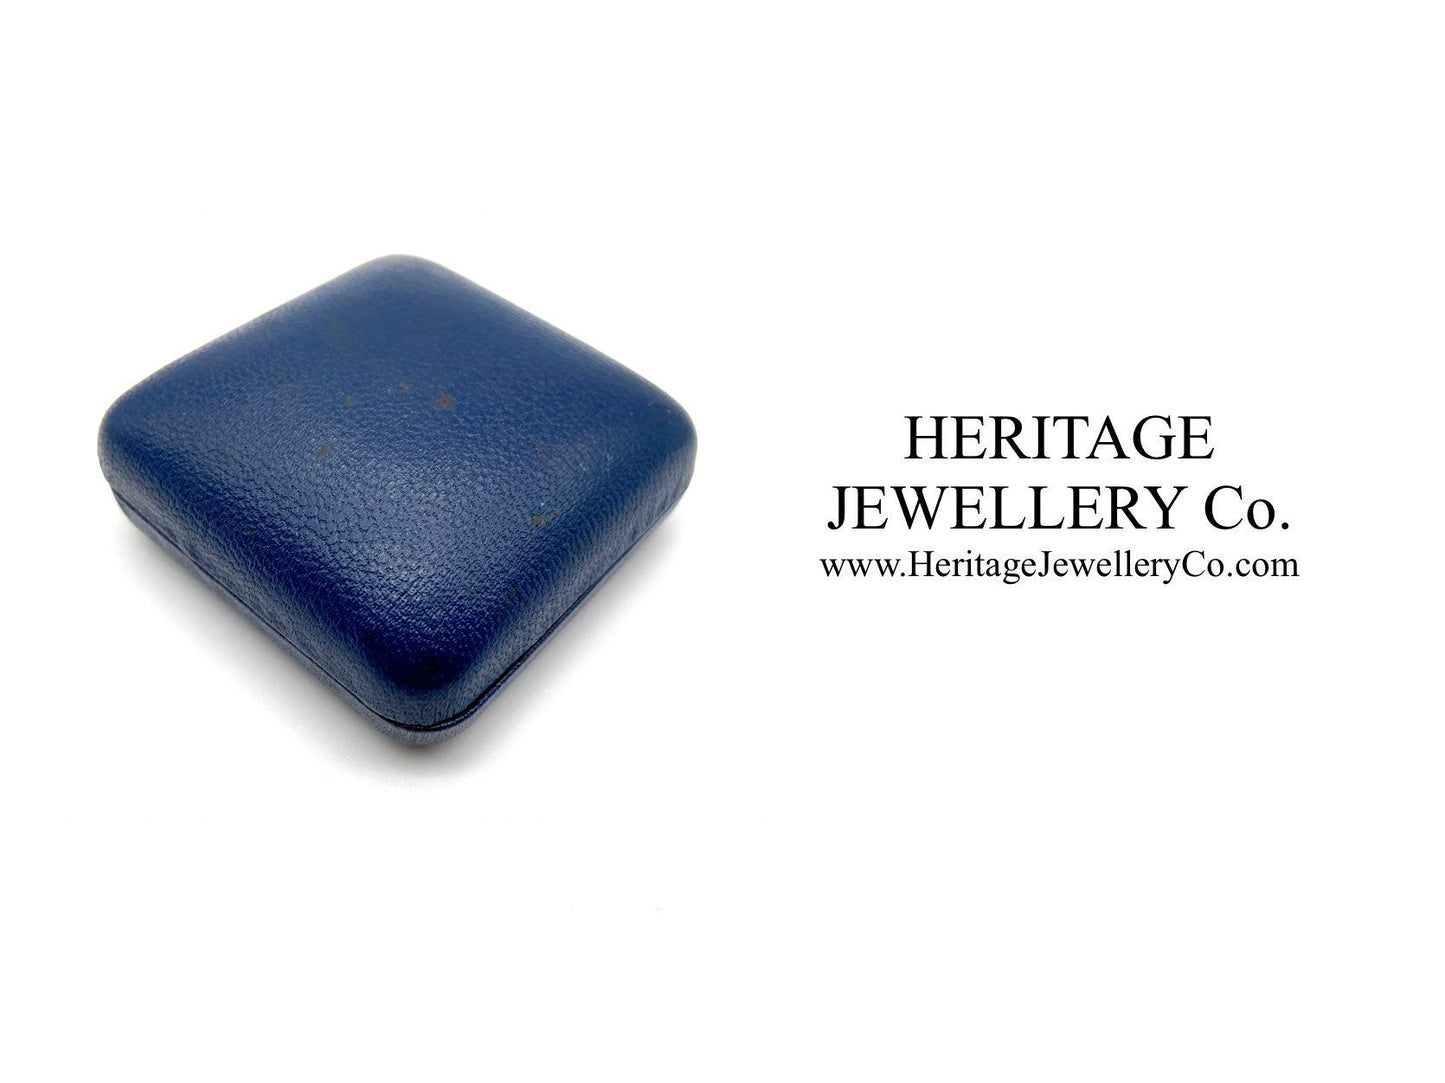 Vintage Leather Jewellery Box